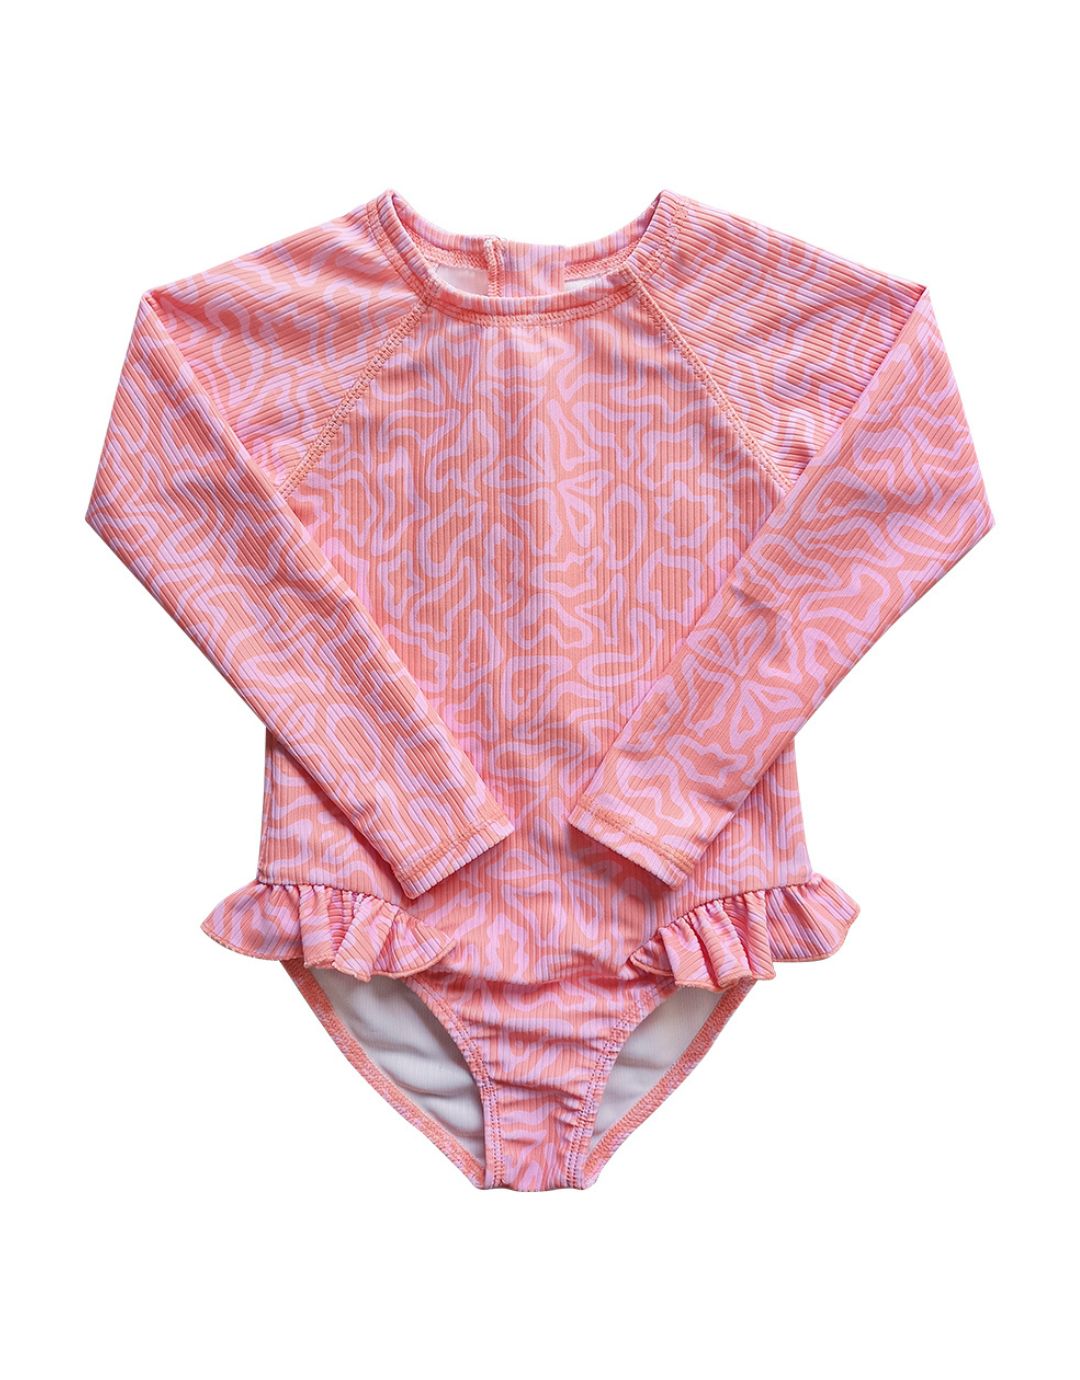 Butterflight Terracotta Swimsuit with UPF 50+ sun protection flatlay